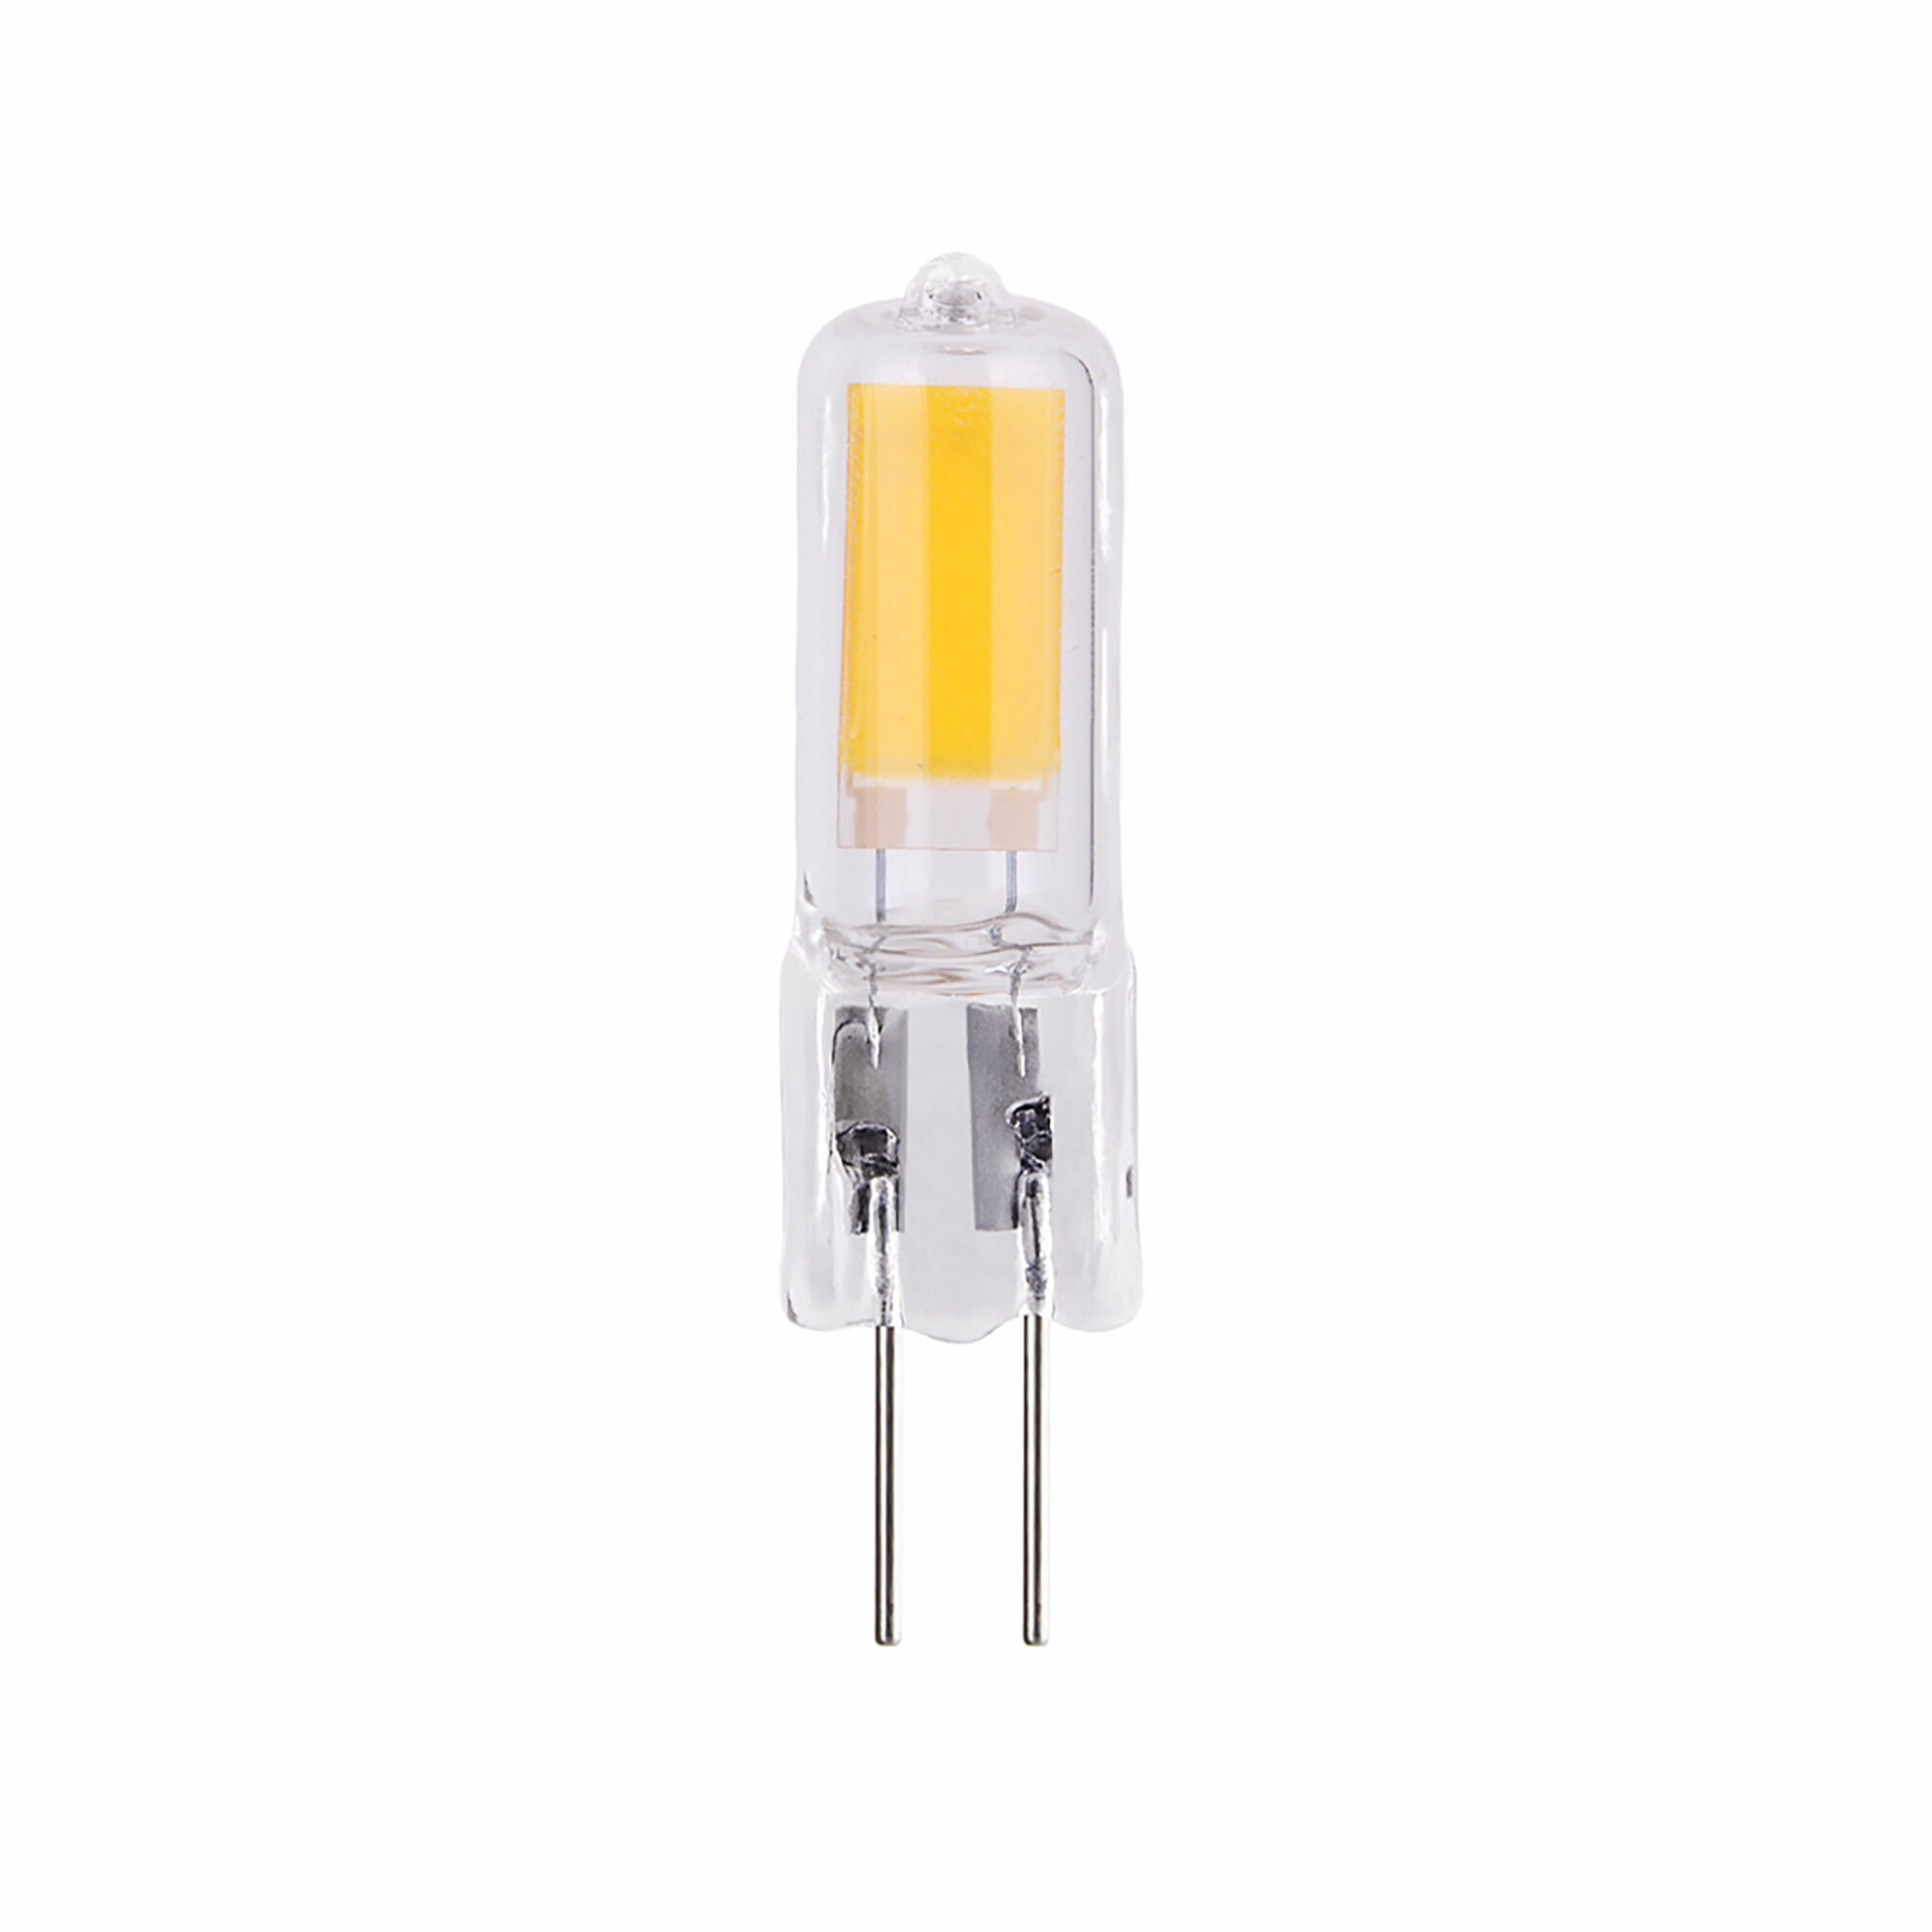 Лампа светодиодная Elektrostandard G4 JCD 5 Вт 3300К теплый свет 220 В капсула (BLG419) лампа светодиодная elektrostandard g4 jcd 5 вт 4200к естественный свет 220 в капсула blg420